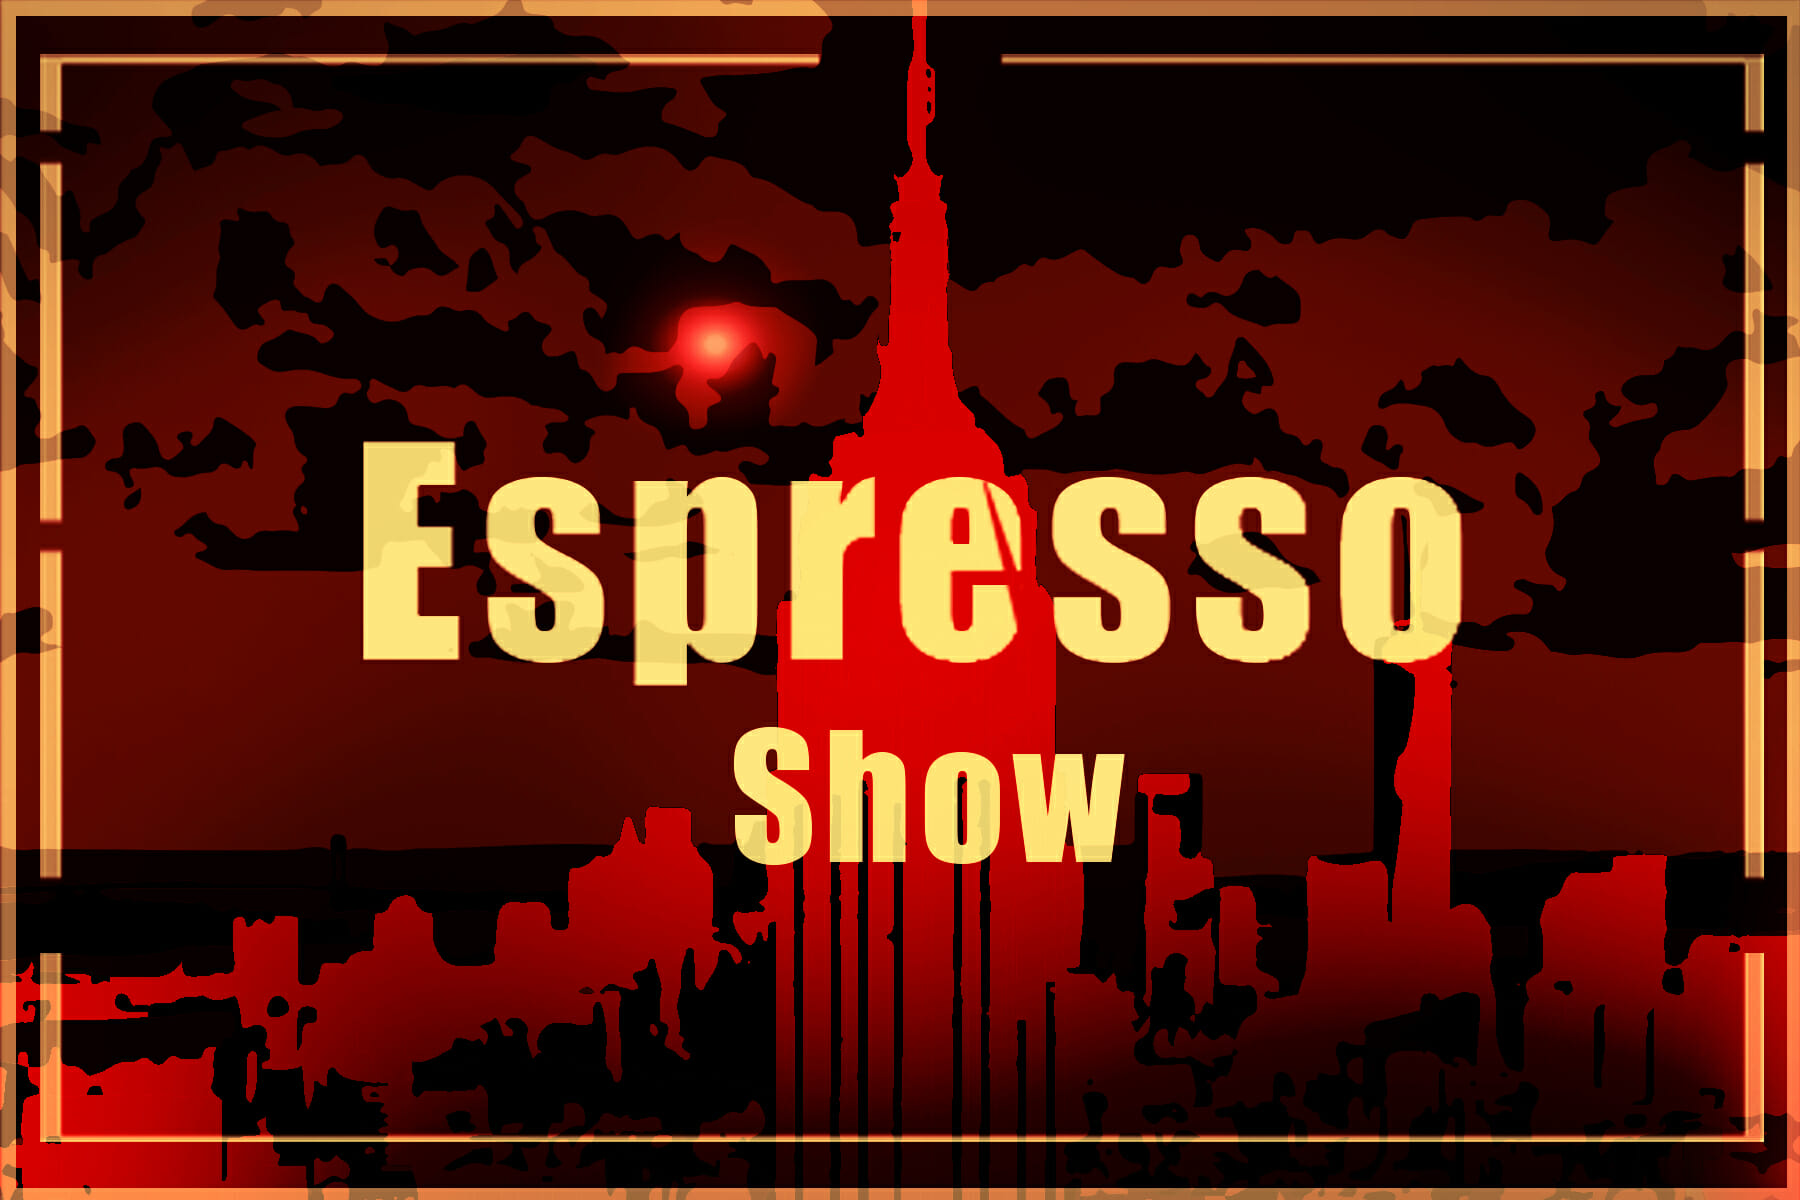 Espresso Show 4-20-17 tanie i... chińskie; różnica wieku w związkach; HIT: 25 pytań do Maryli Rodowicz